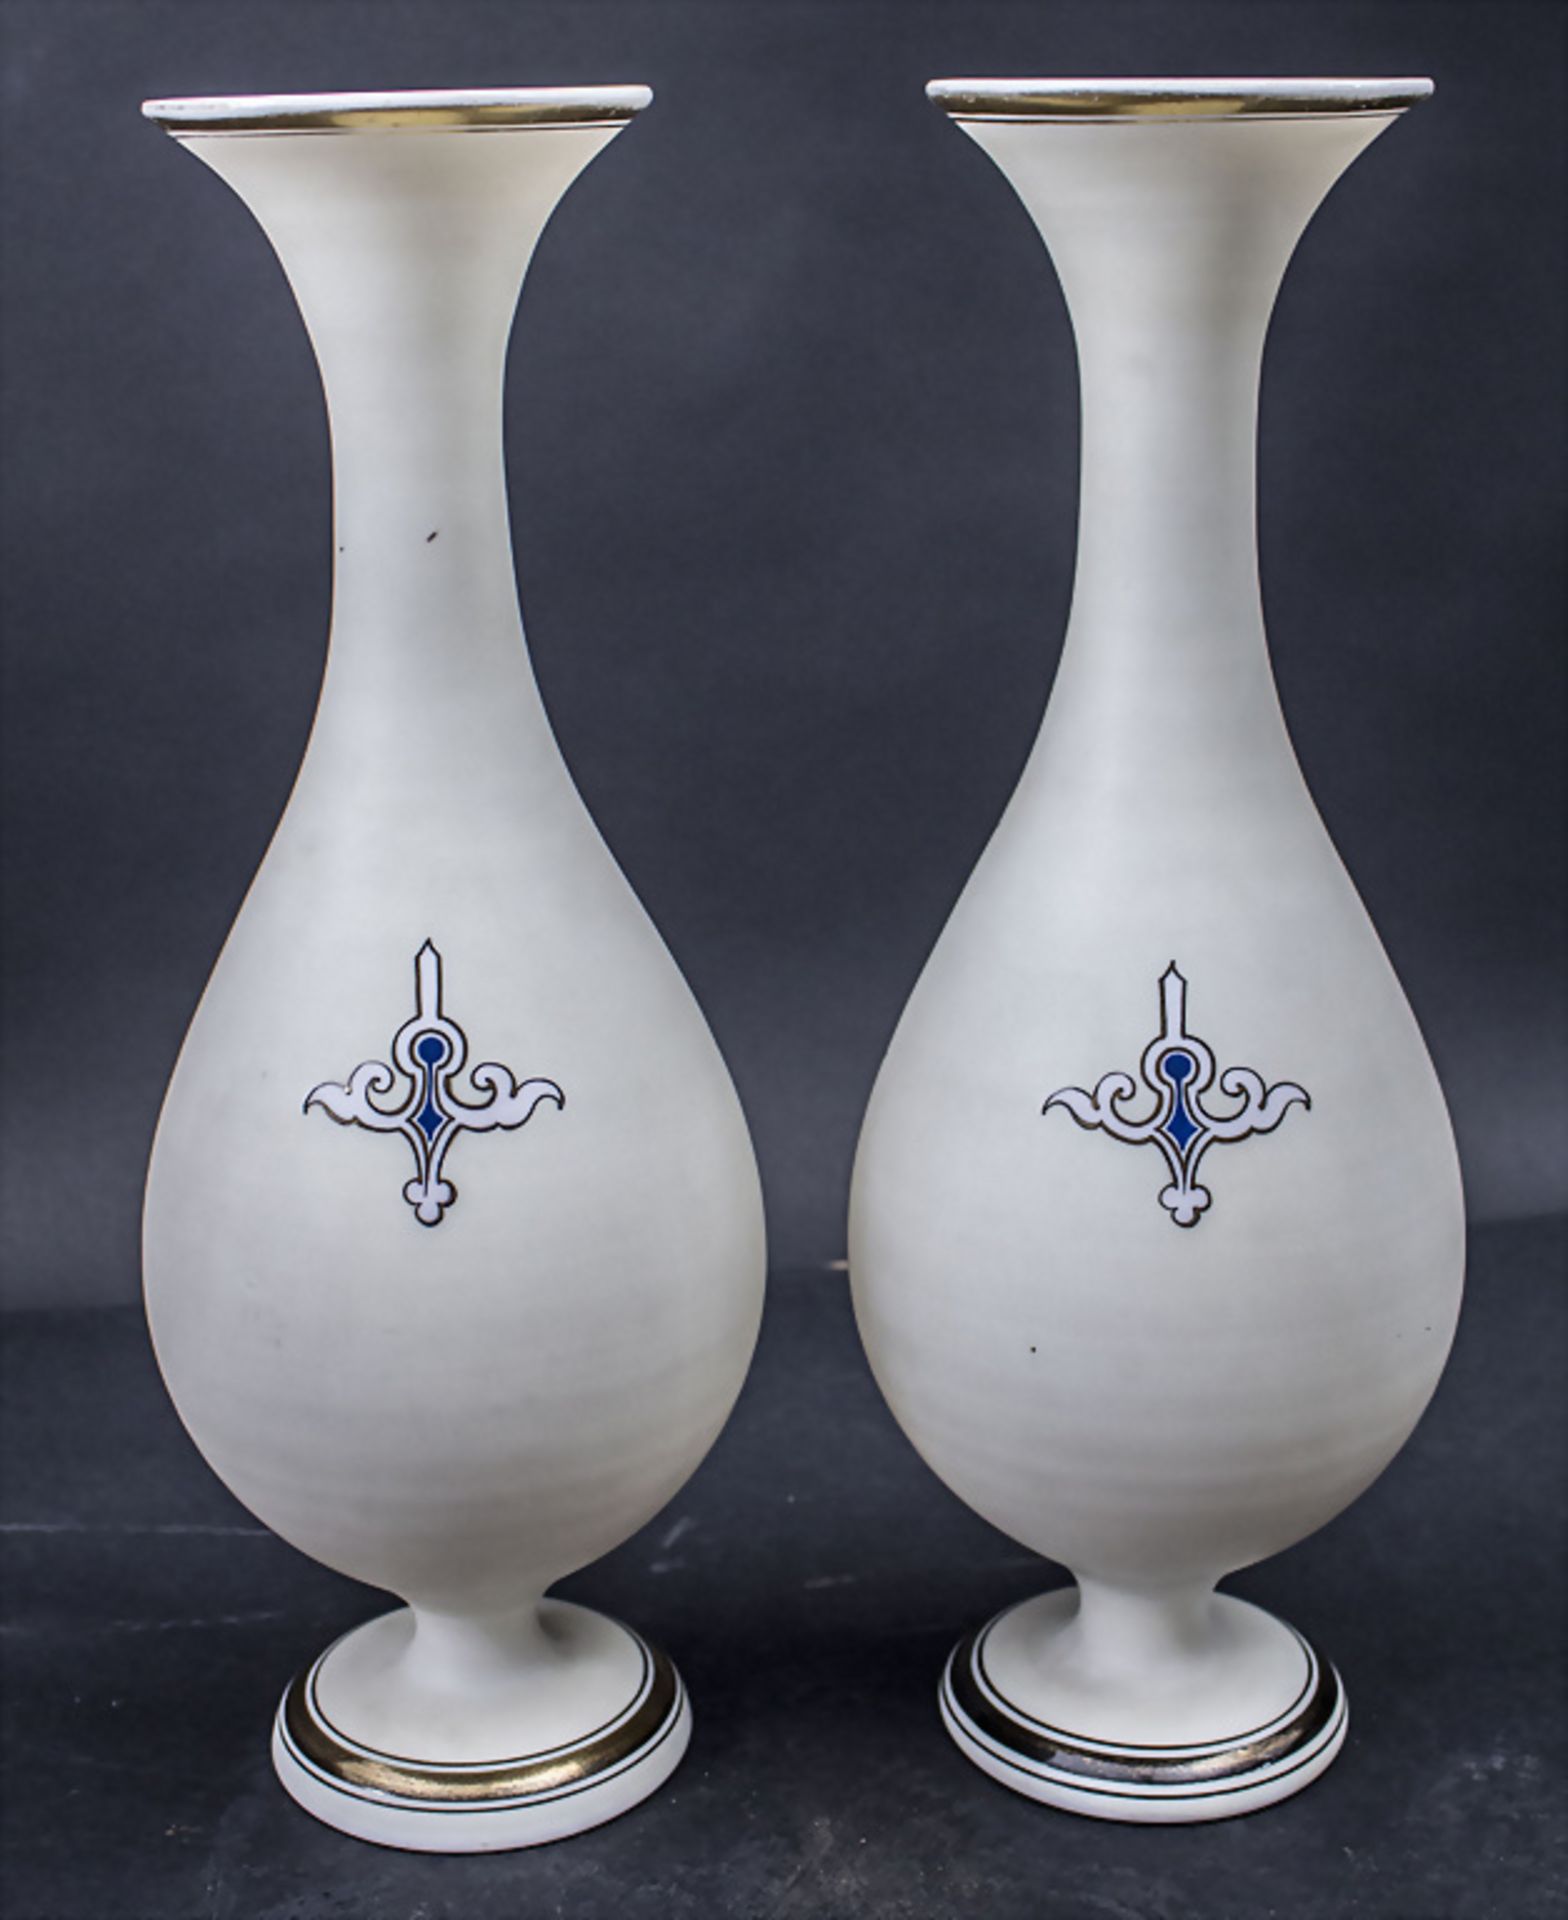 Paar Biedermeier Glasvasen / A pair of Biedermeier glass vases, um 1860 - Image 5 of 7